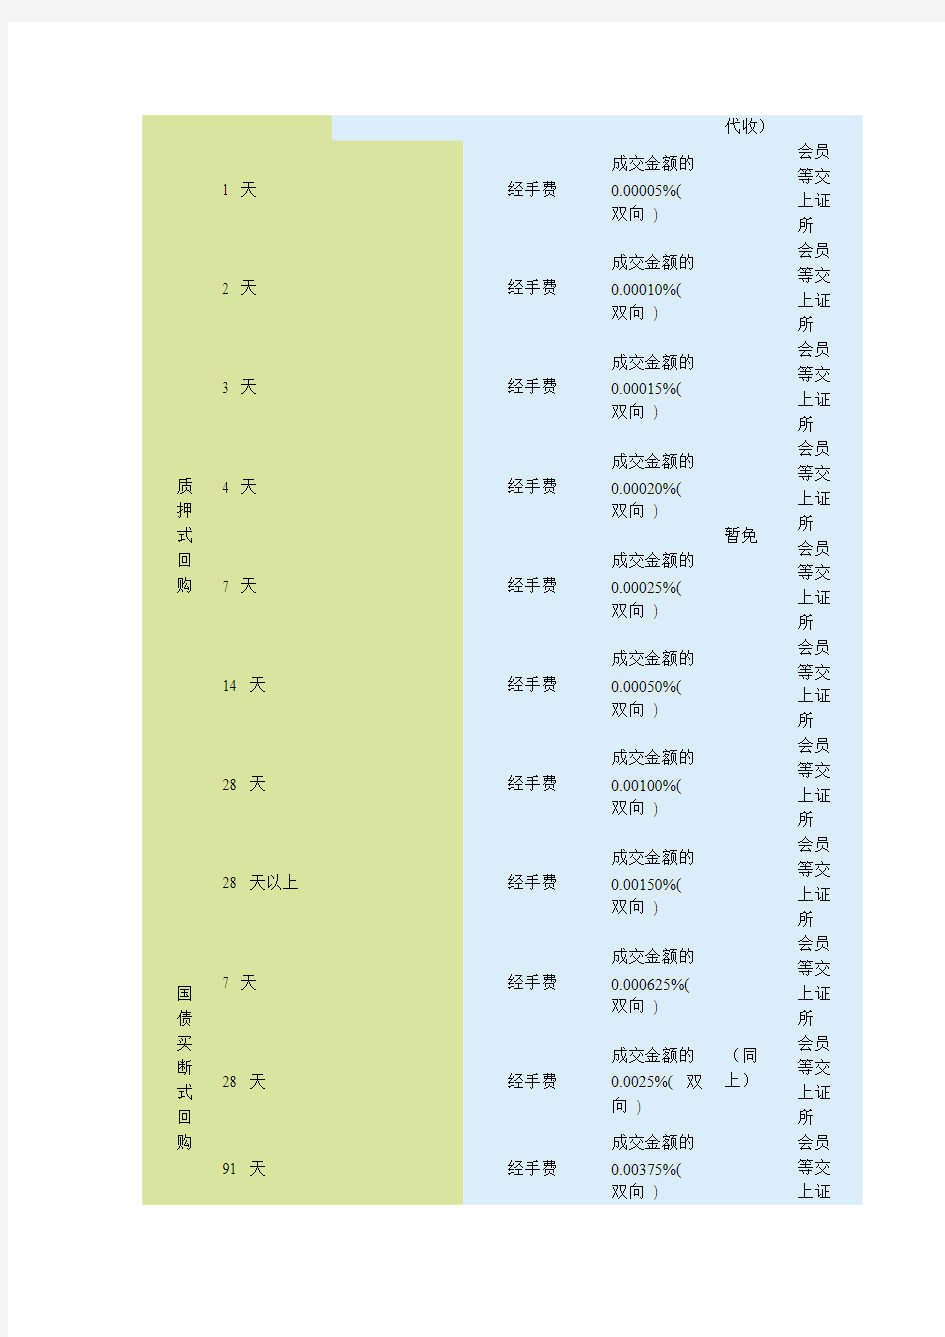 上海证券交易所收费及代收税费一览表(2012)